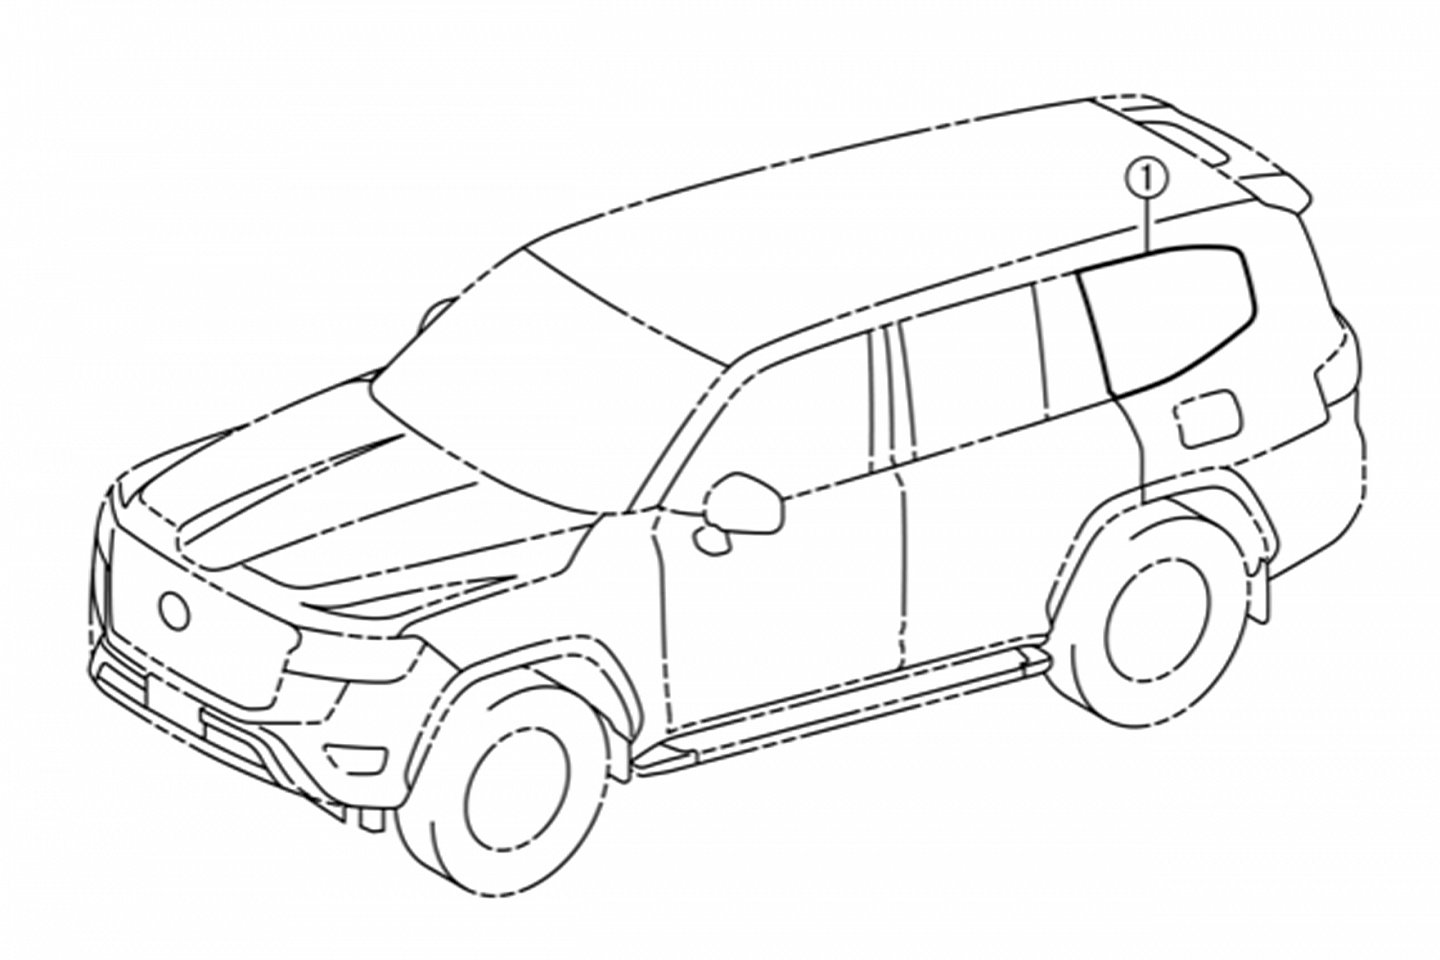 Thiết kế Toyota Land Cruiser: Toyota Land Cruiser là một trong những mẫu xe hơi đẳng cấp nhất. Bạn đang muốn thiết kế một chiếc xe đẳng cấp tương tự? Hãy xem bức tranh này để có thêm ý tưởng và cảm hứng cho bản thiết kế của bạn.